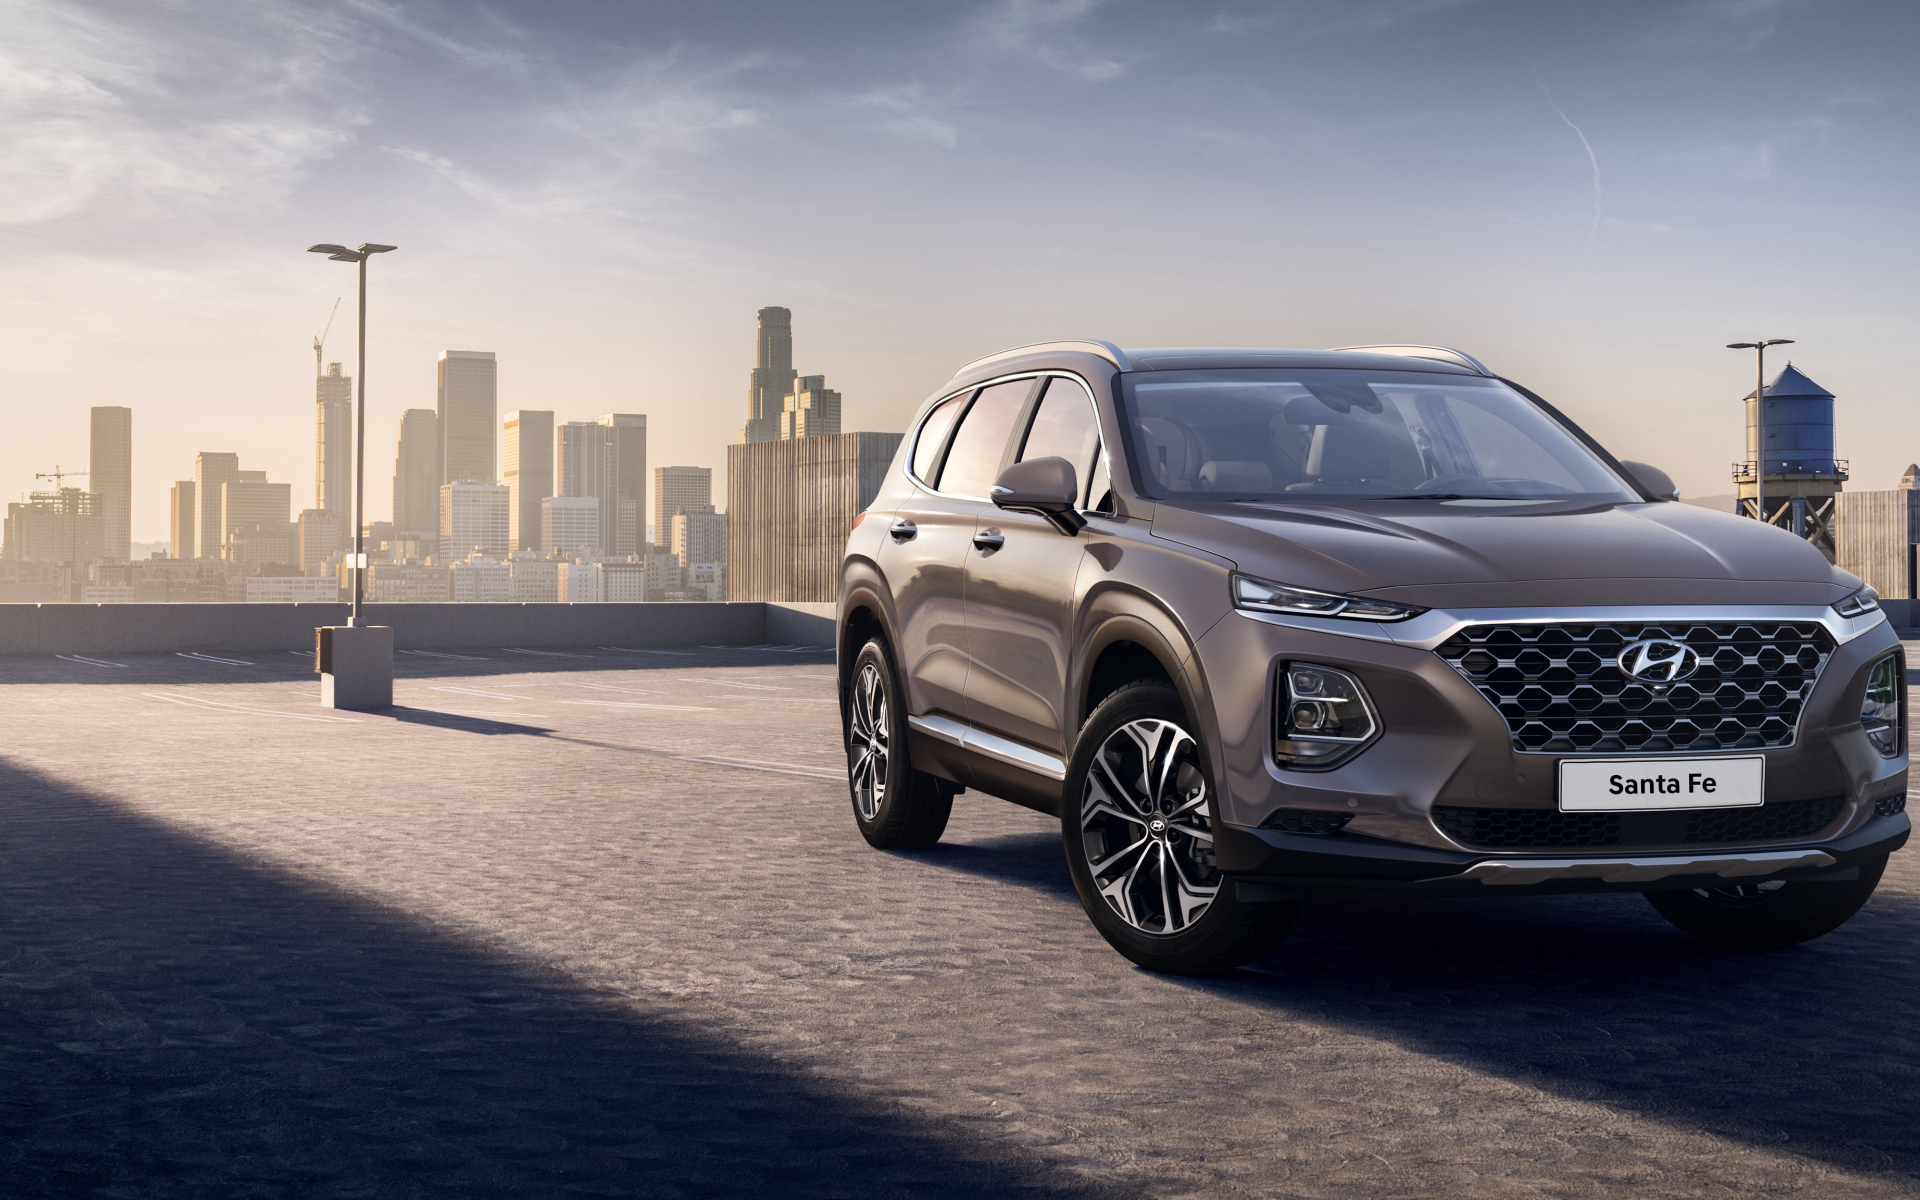 Новый внедорожник Hyundai Santa Fe, 2019 на фоне города